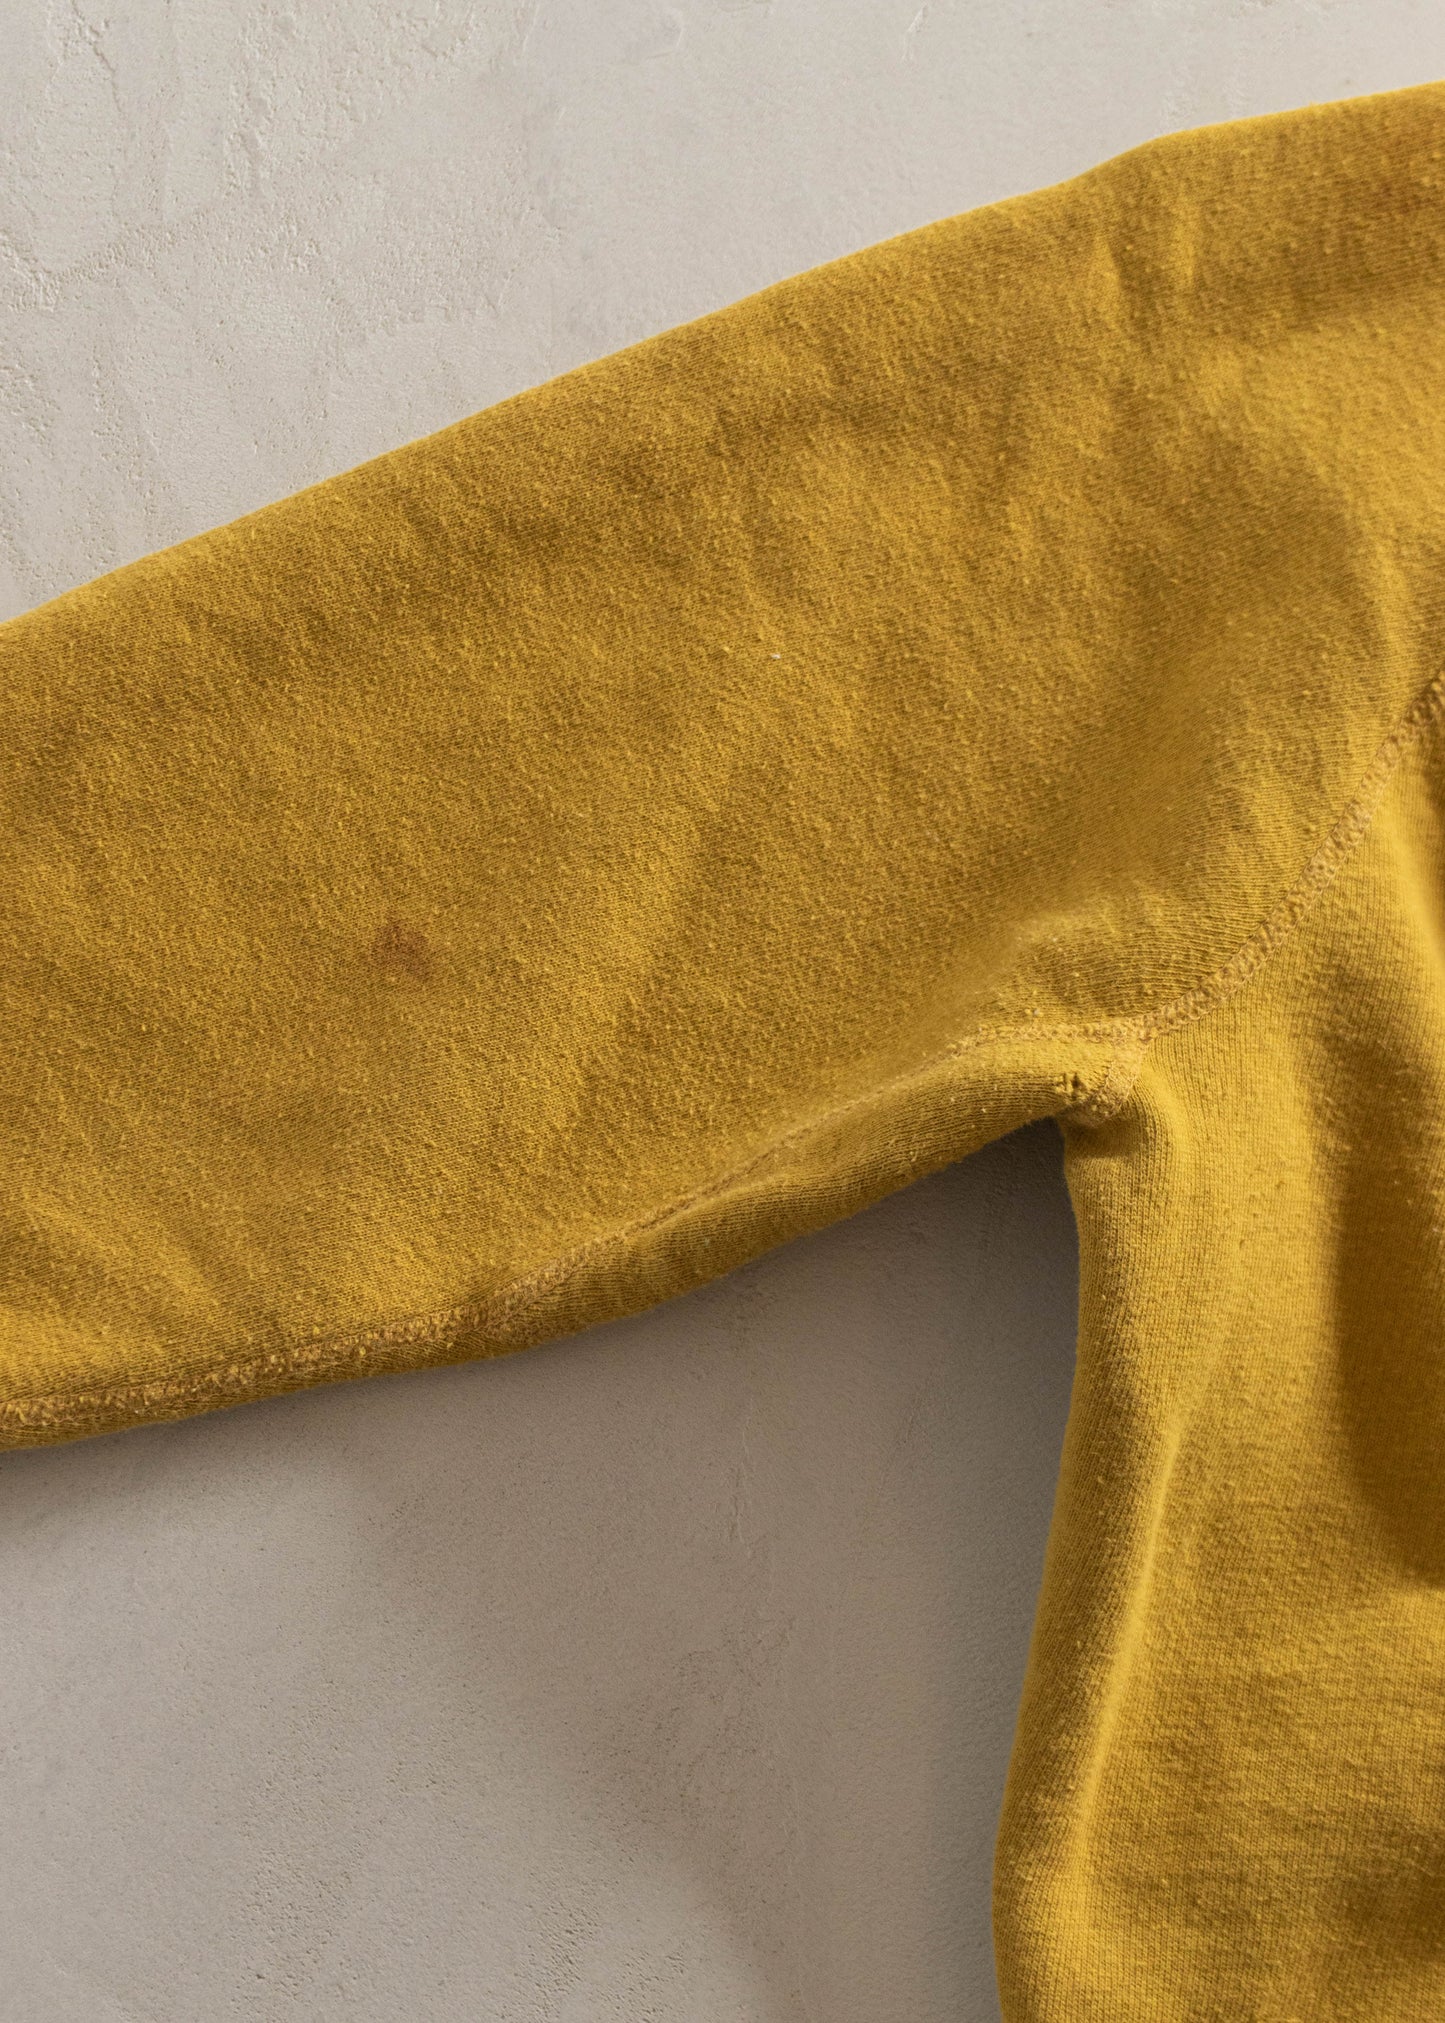 1960s Velva Sheen Delta Zeta Souvenir Sweatshirt Size M/L